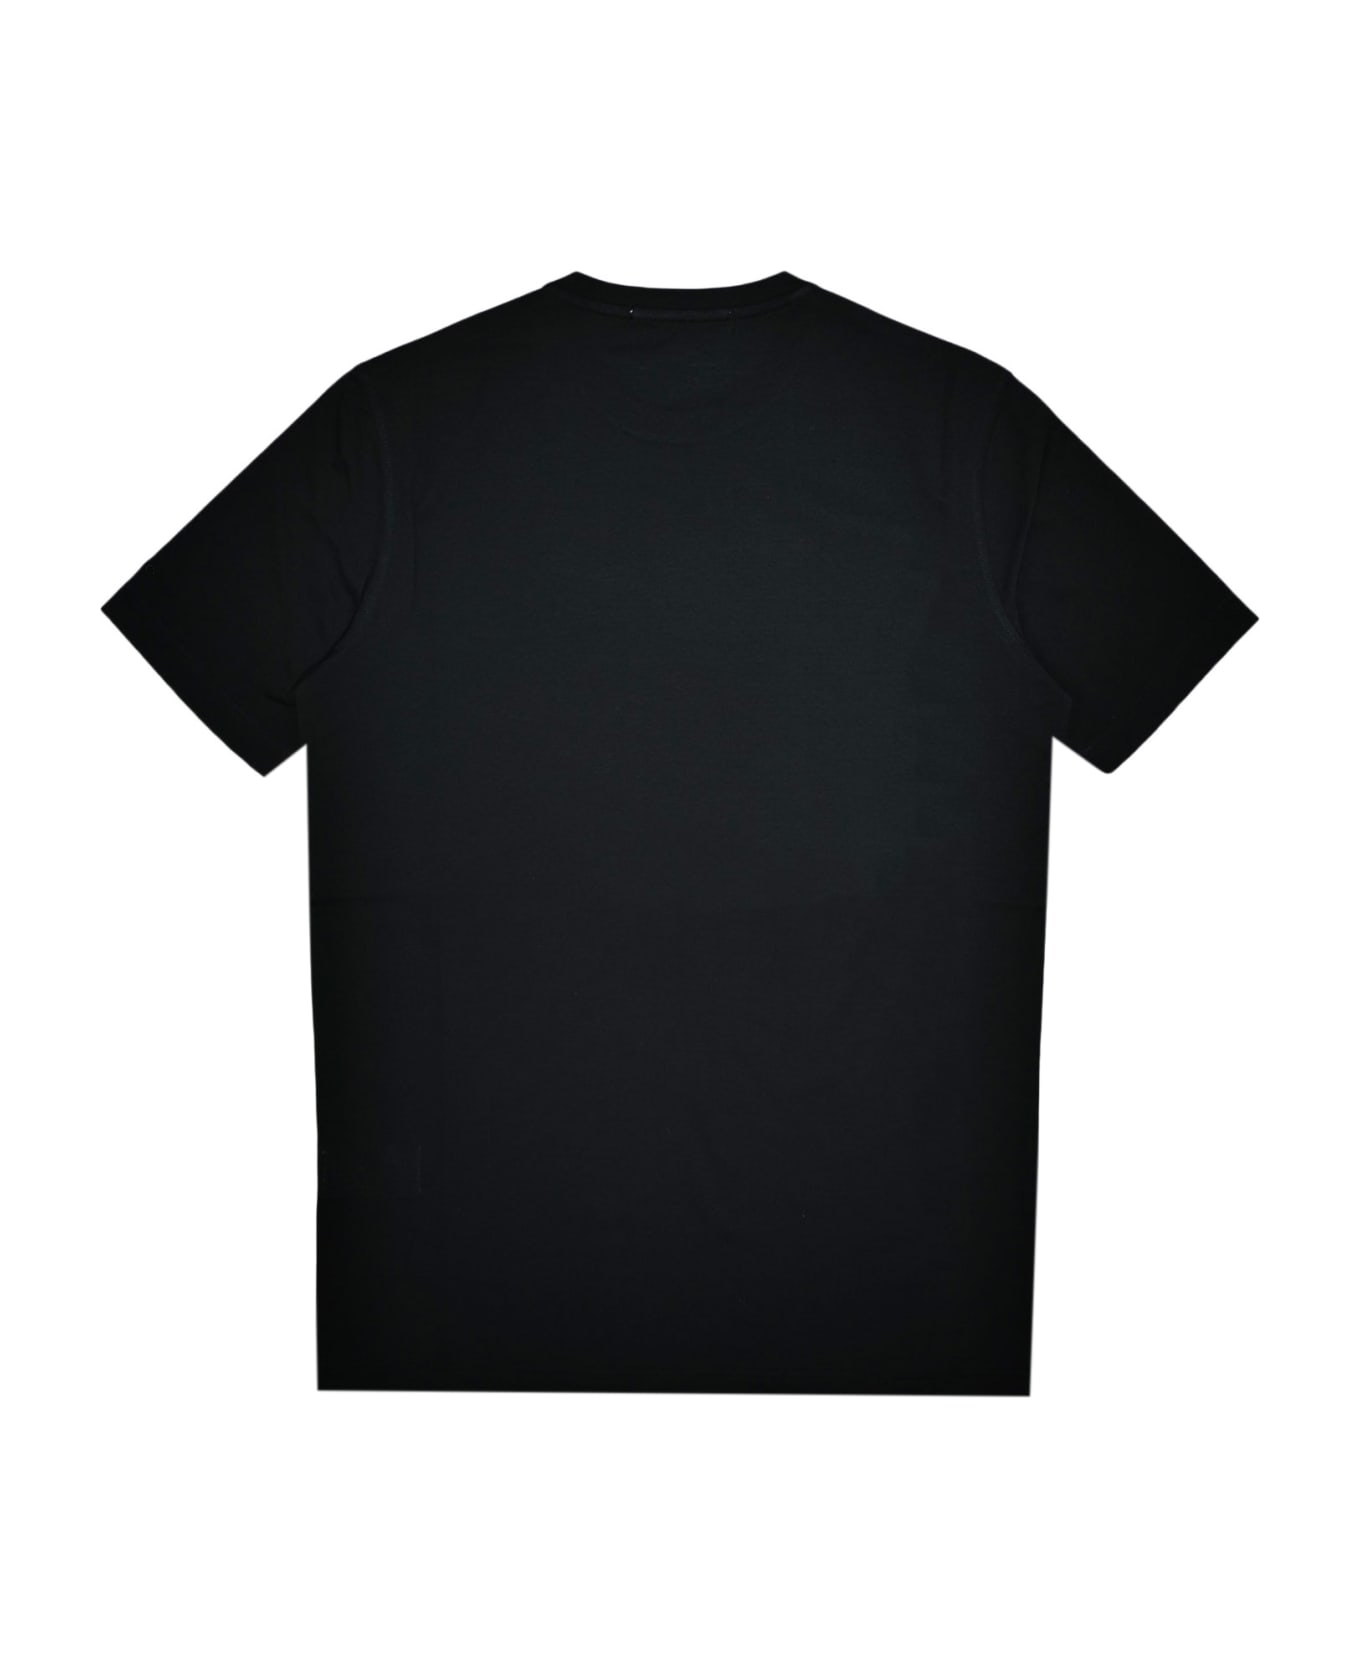 Emanuel Ungaro T-shirt - Black